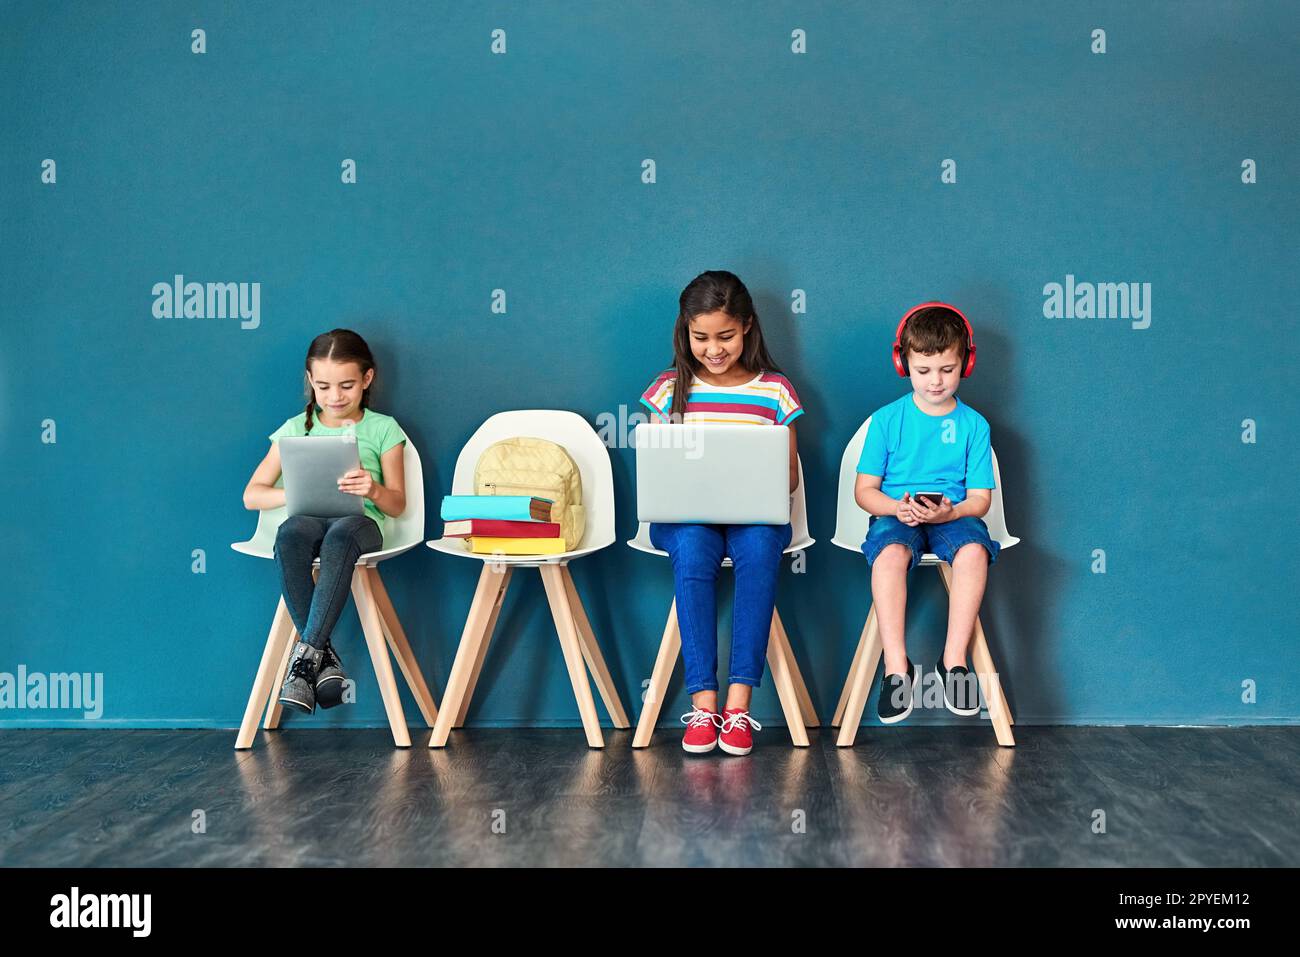 Mit drahtlosen Geräten aufwachsen. Studioaufnahme von Kindern, die auf Stühlen sitzen und drahtlose Technologie verwenden, vor blauem Hintergrund. Stockfoto